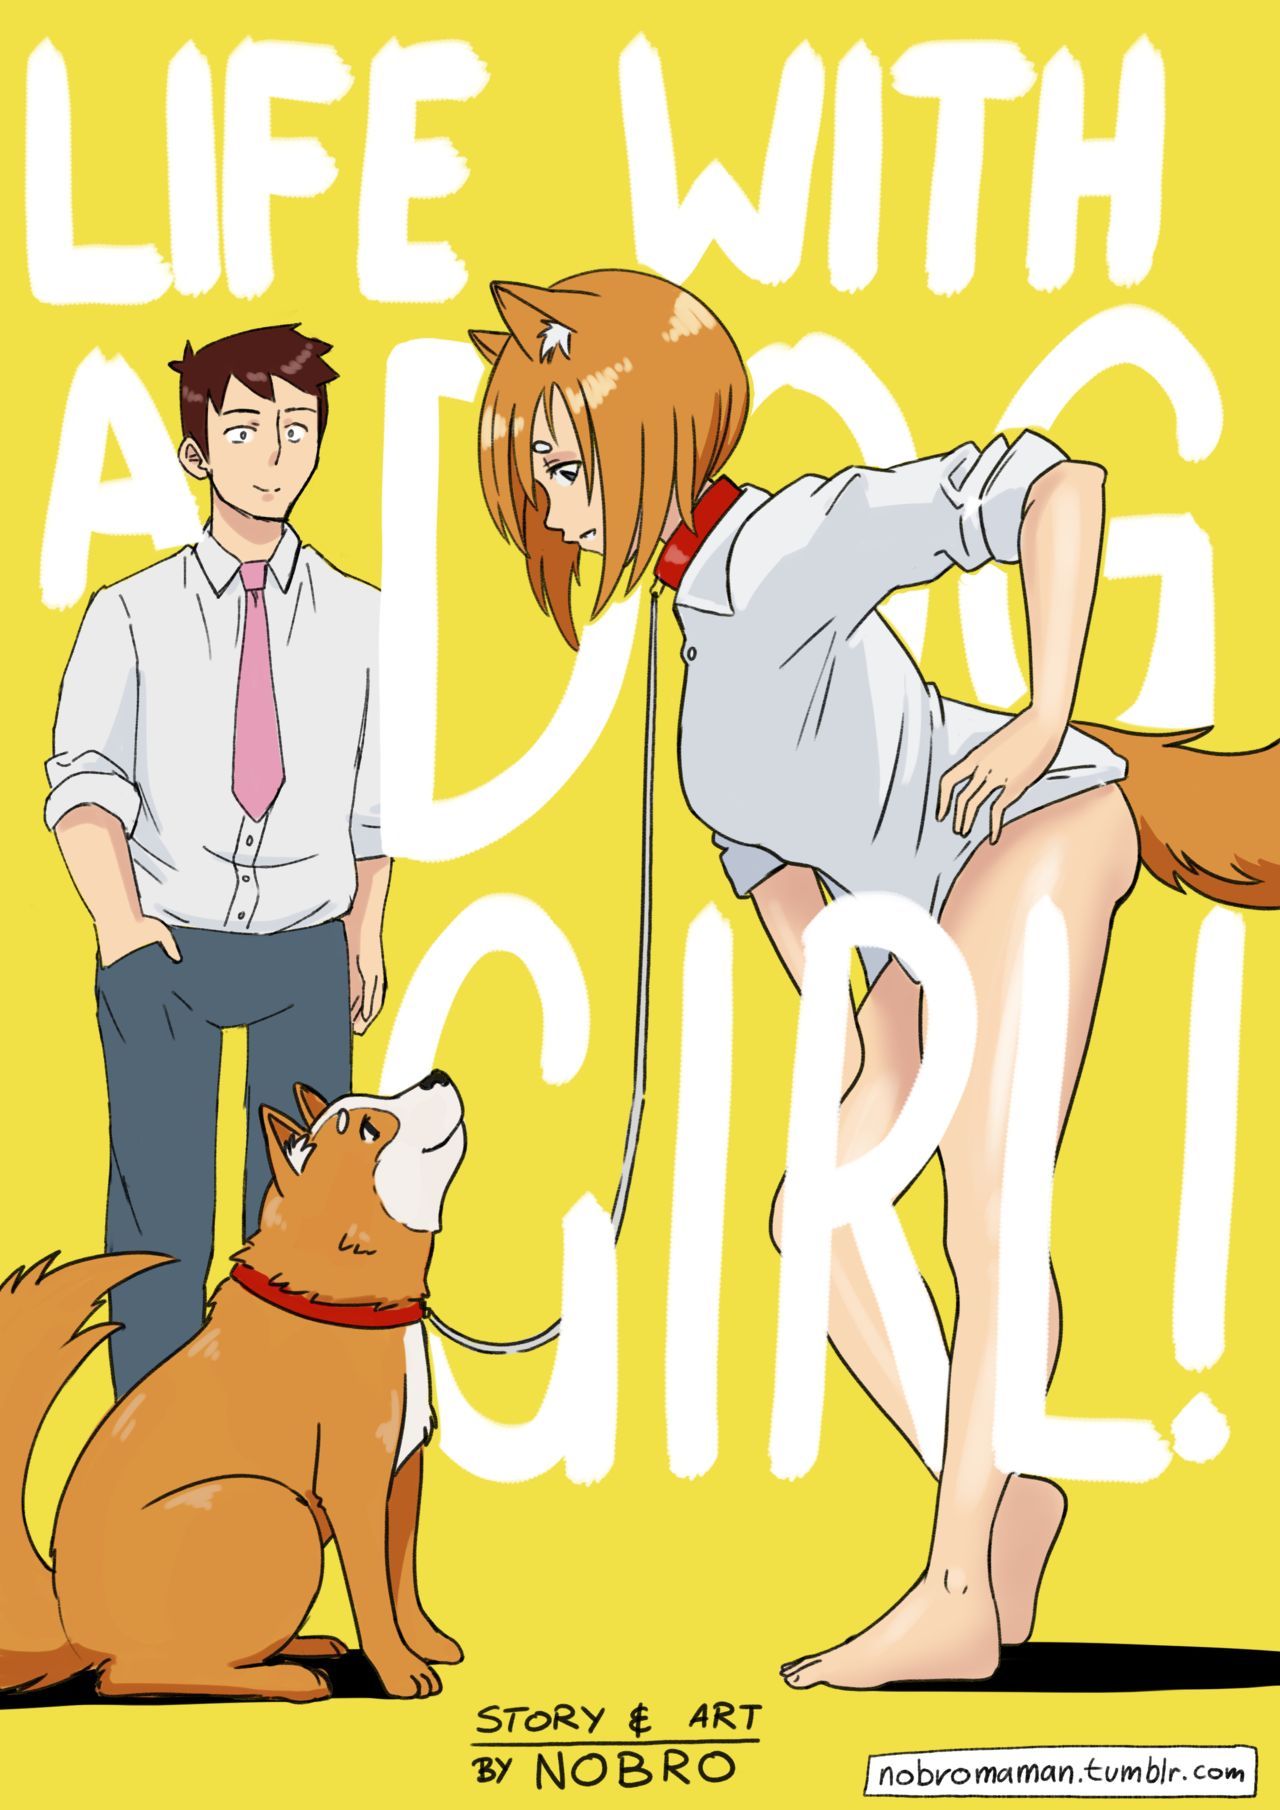 Читать онлайн хентай мангу Life With a Dog Girl №1 / Жизнь с  собако-девочкой на русском! ХентайМуд!